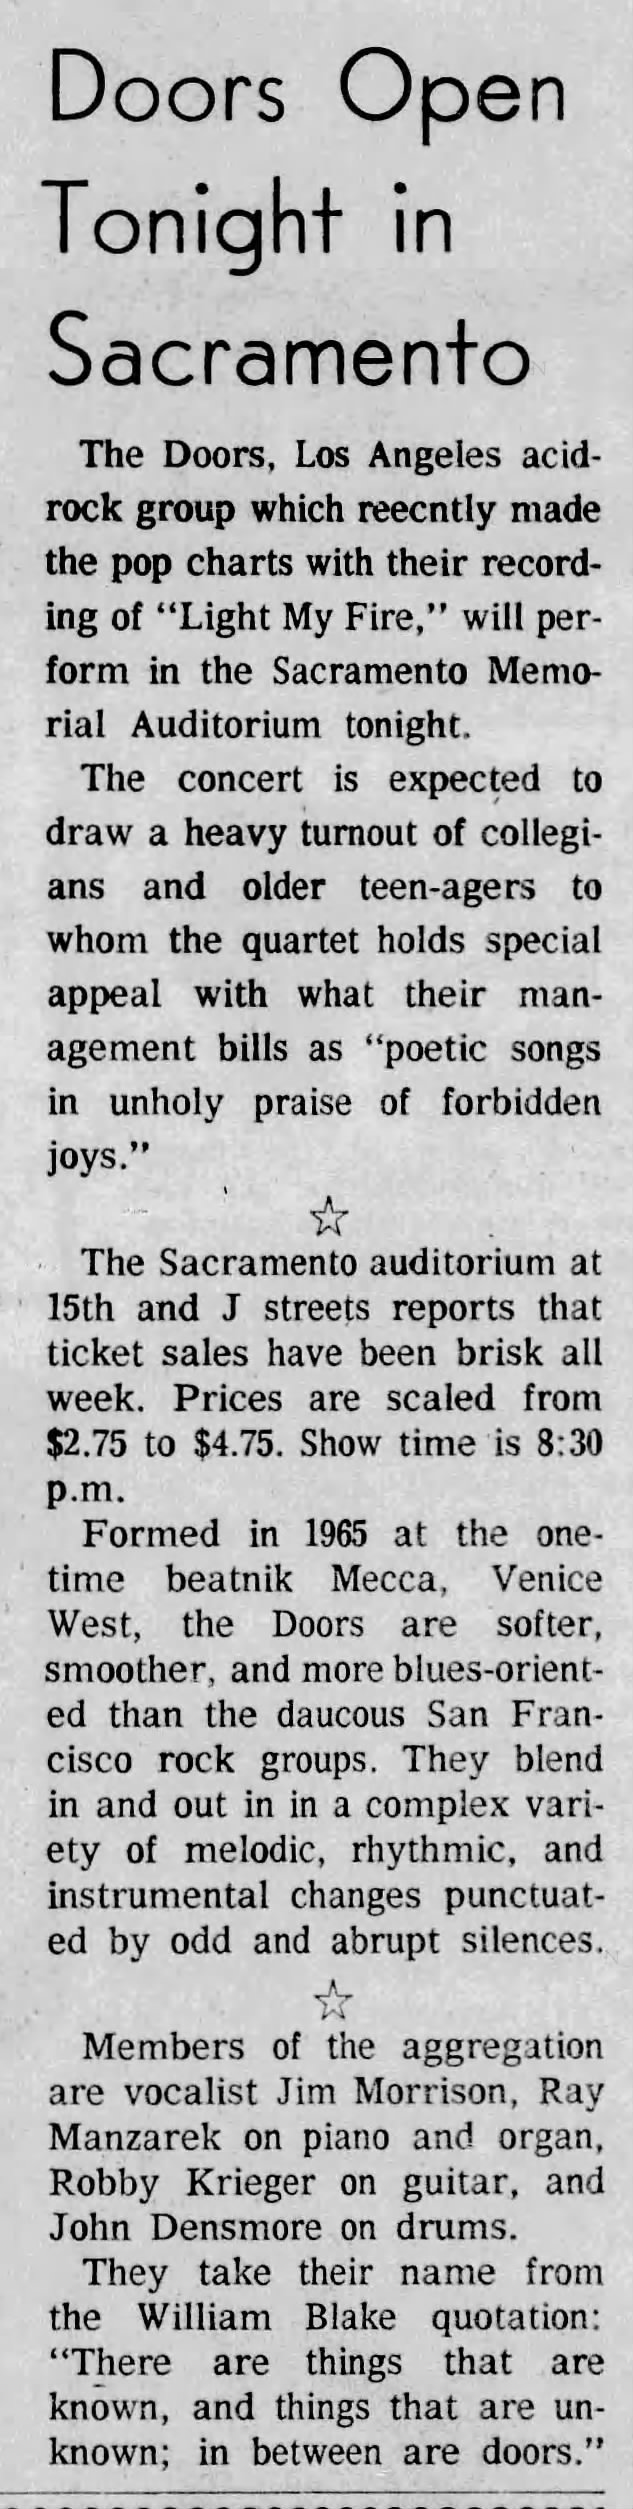 The Doors at Memorial Auditorium, 1968